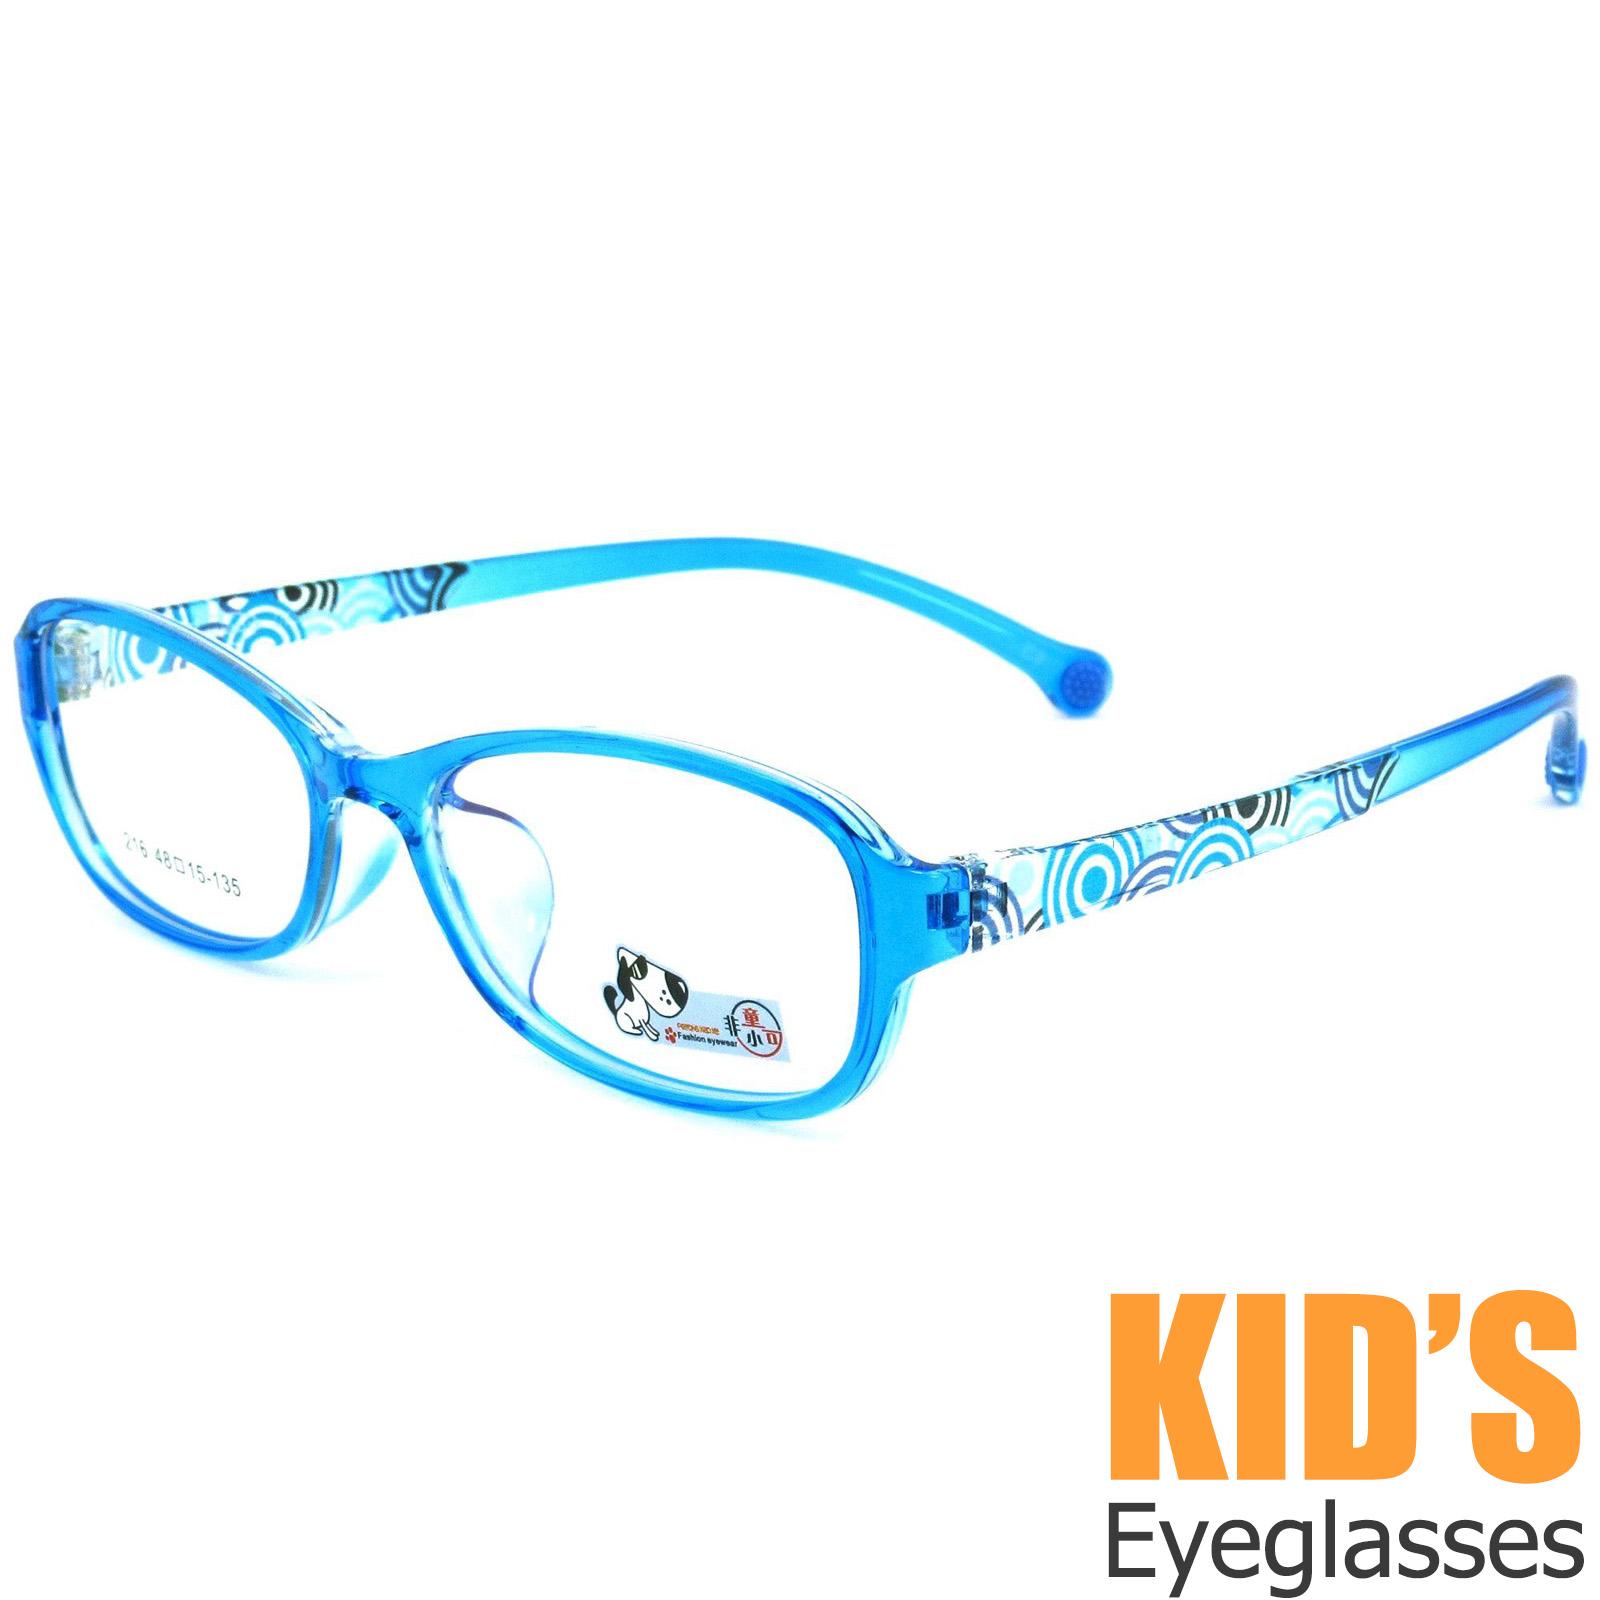 แว่นตาเกาหลีเด็ก Fashion Korea Children แว่นตาเด็ก รุ่น 216 สีฟ้ากรอบใส กรอบแว่นตาเด็ก Pillow ทรงวงรียาว Eyeglass baby frame ( สำหรับตัดเลนส์ ) วัสดุ PC เบา ขาข้อต่อ Kid leg joints Plastic Grade A material Eyewear Top Glasses